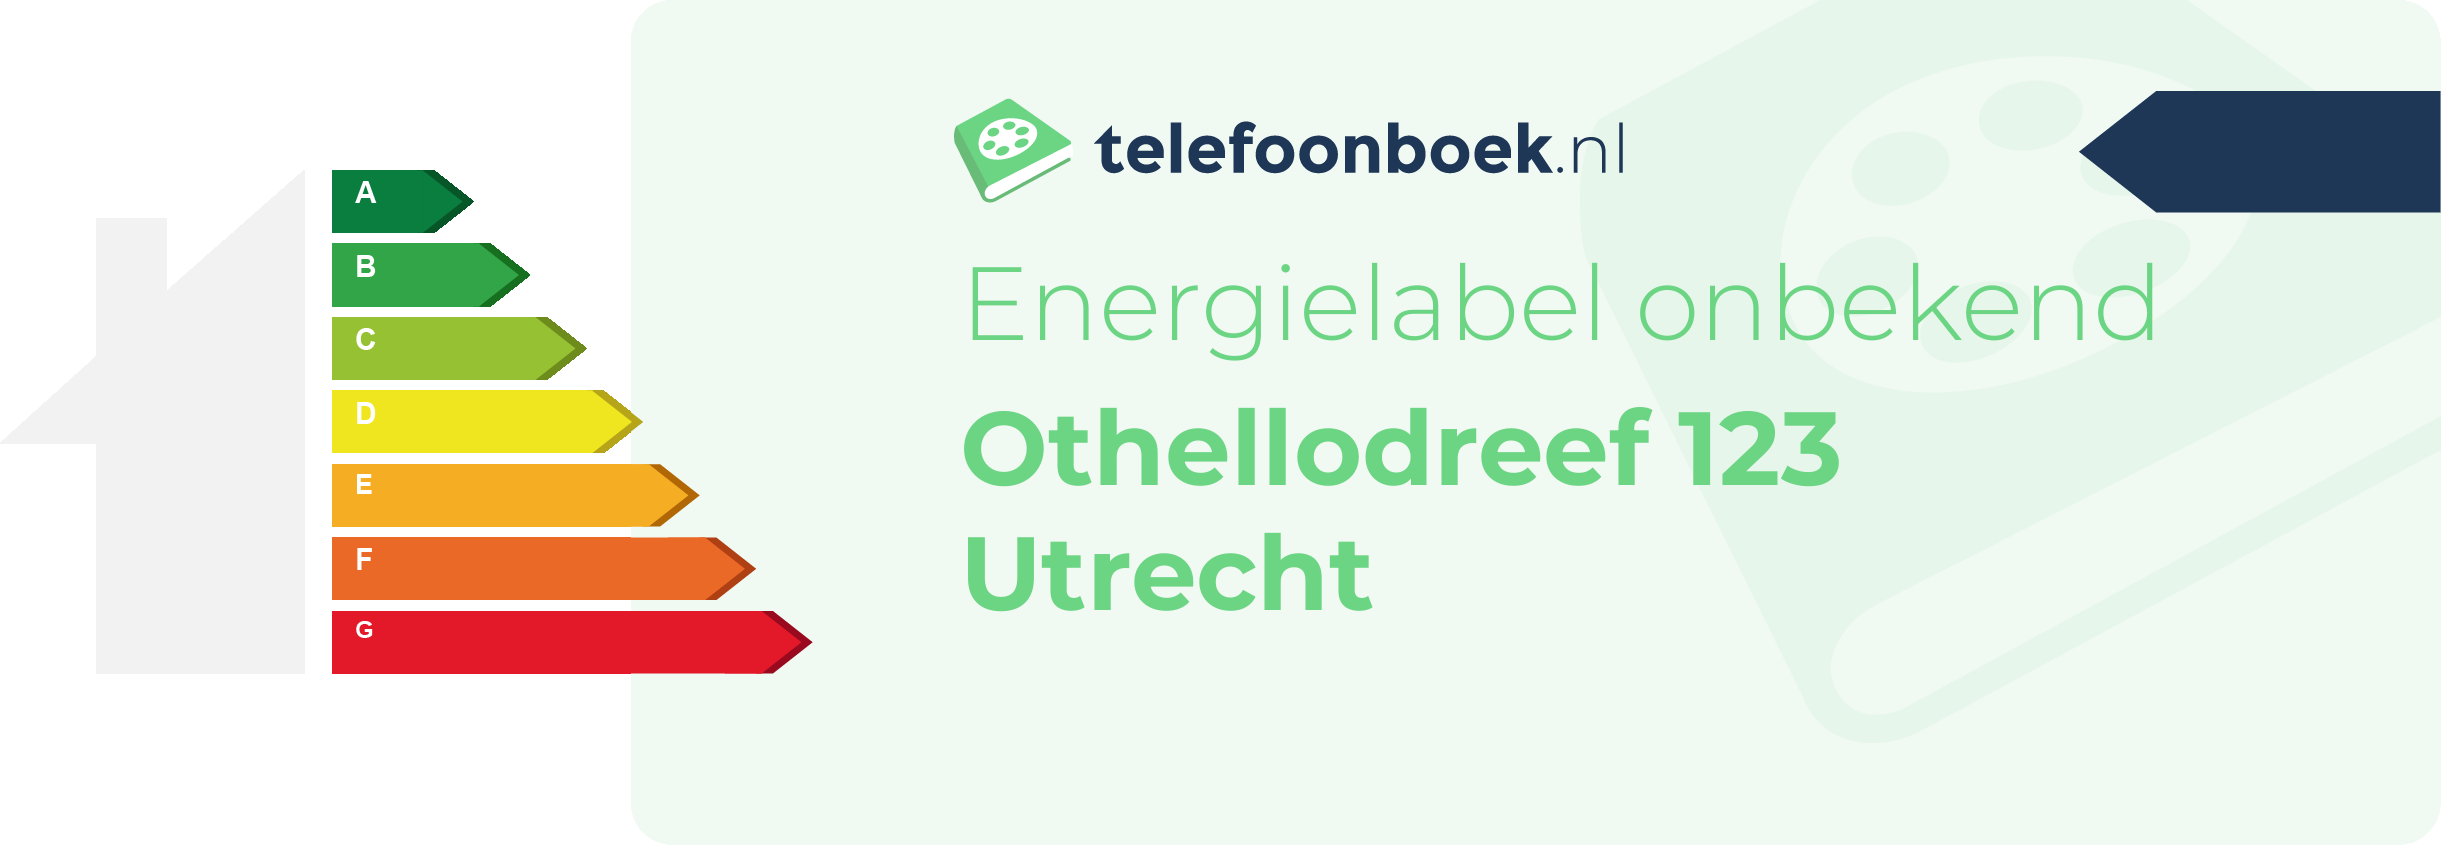 Energielabel Othellodreef 123 Utrecht